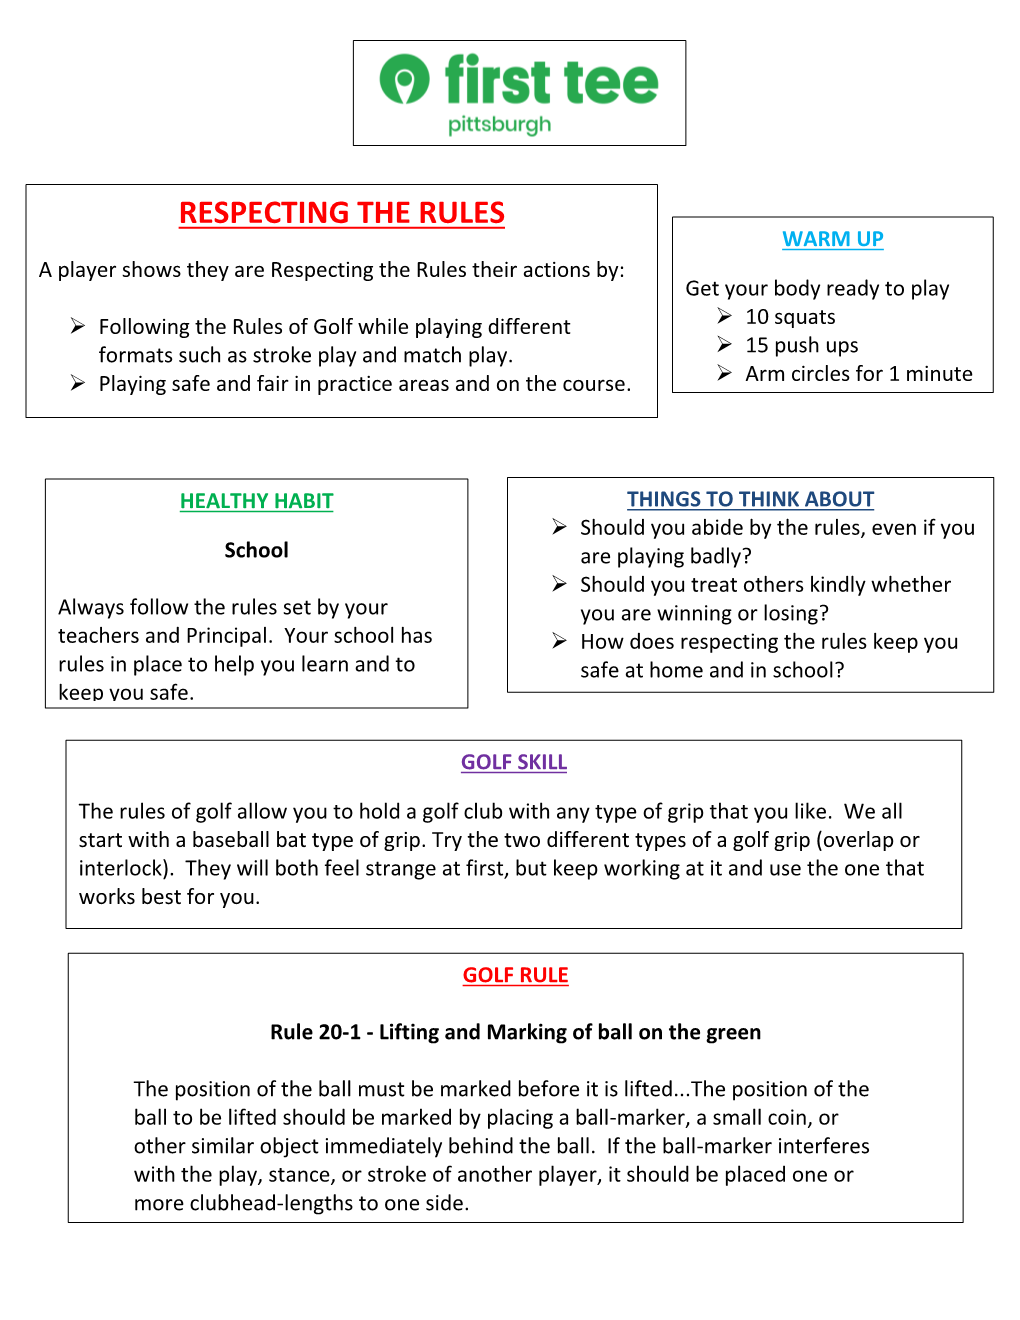 Coach Jeff's Par Level Week 2 Lesson Guide